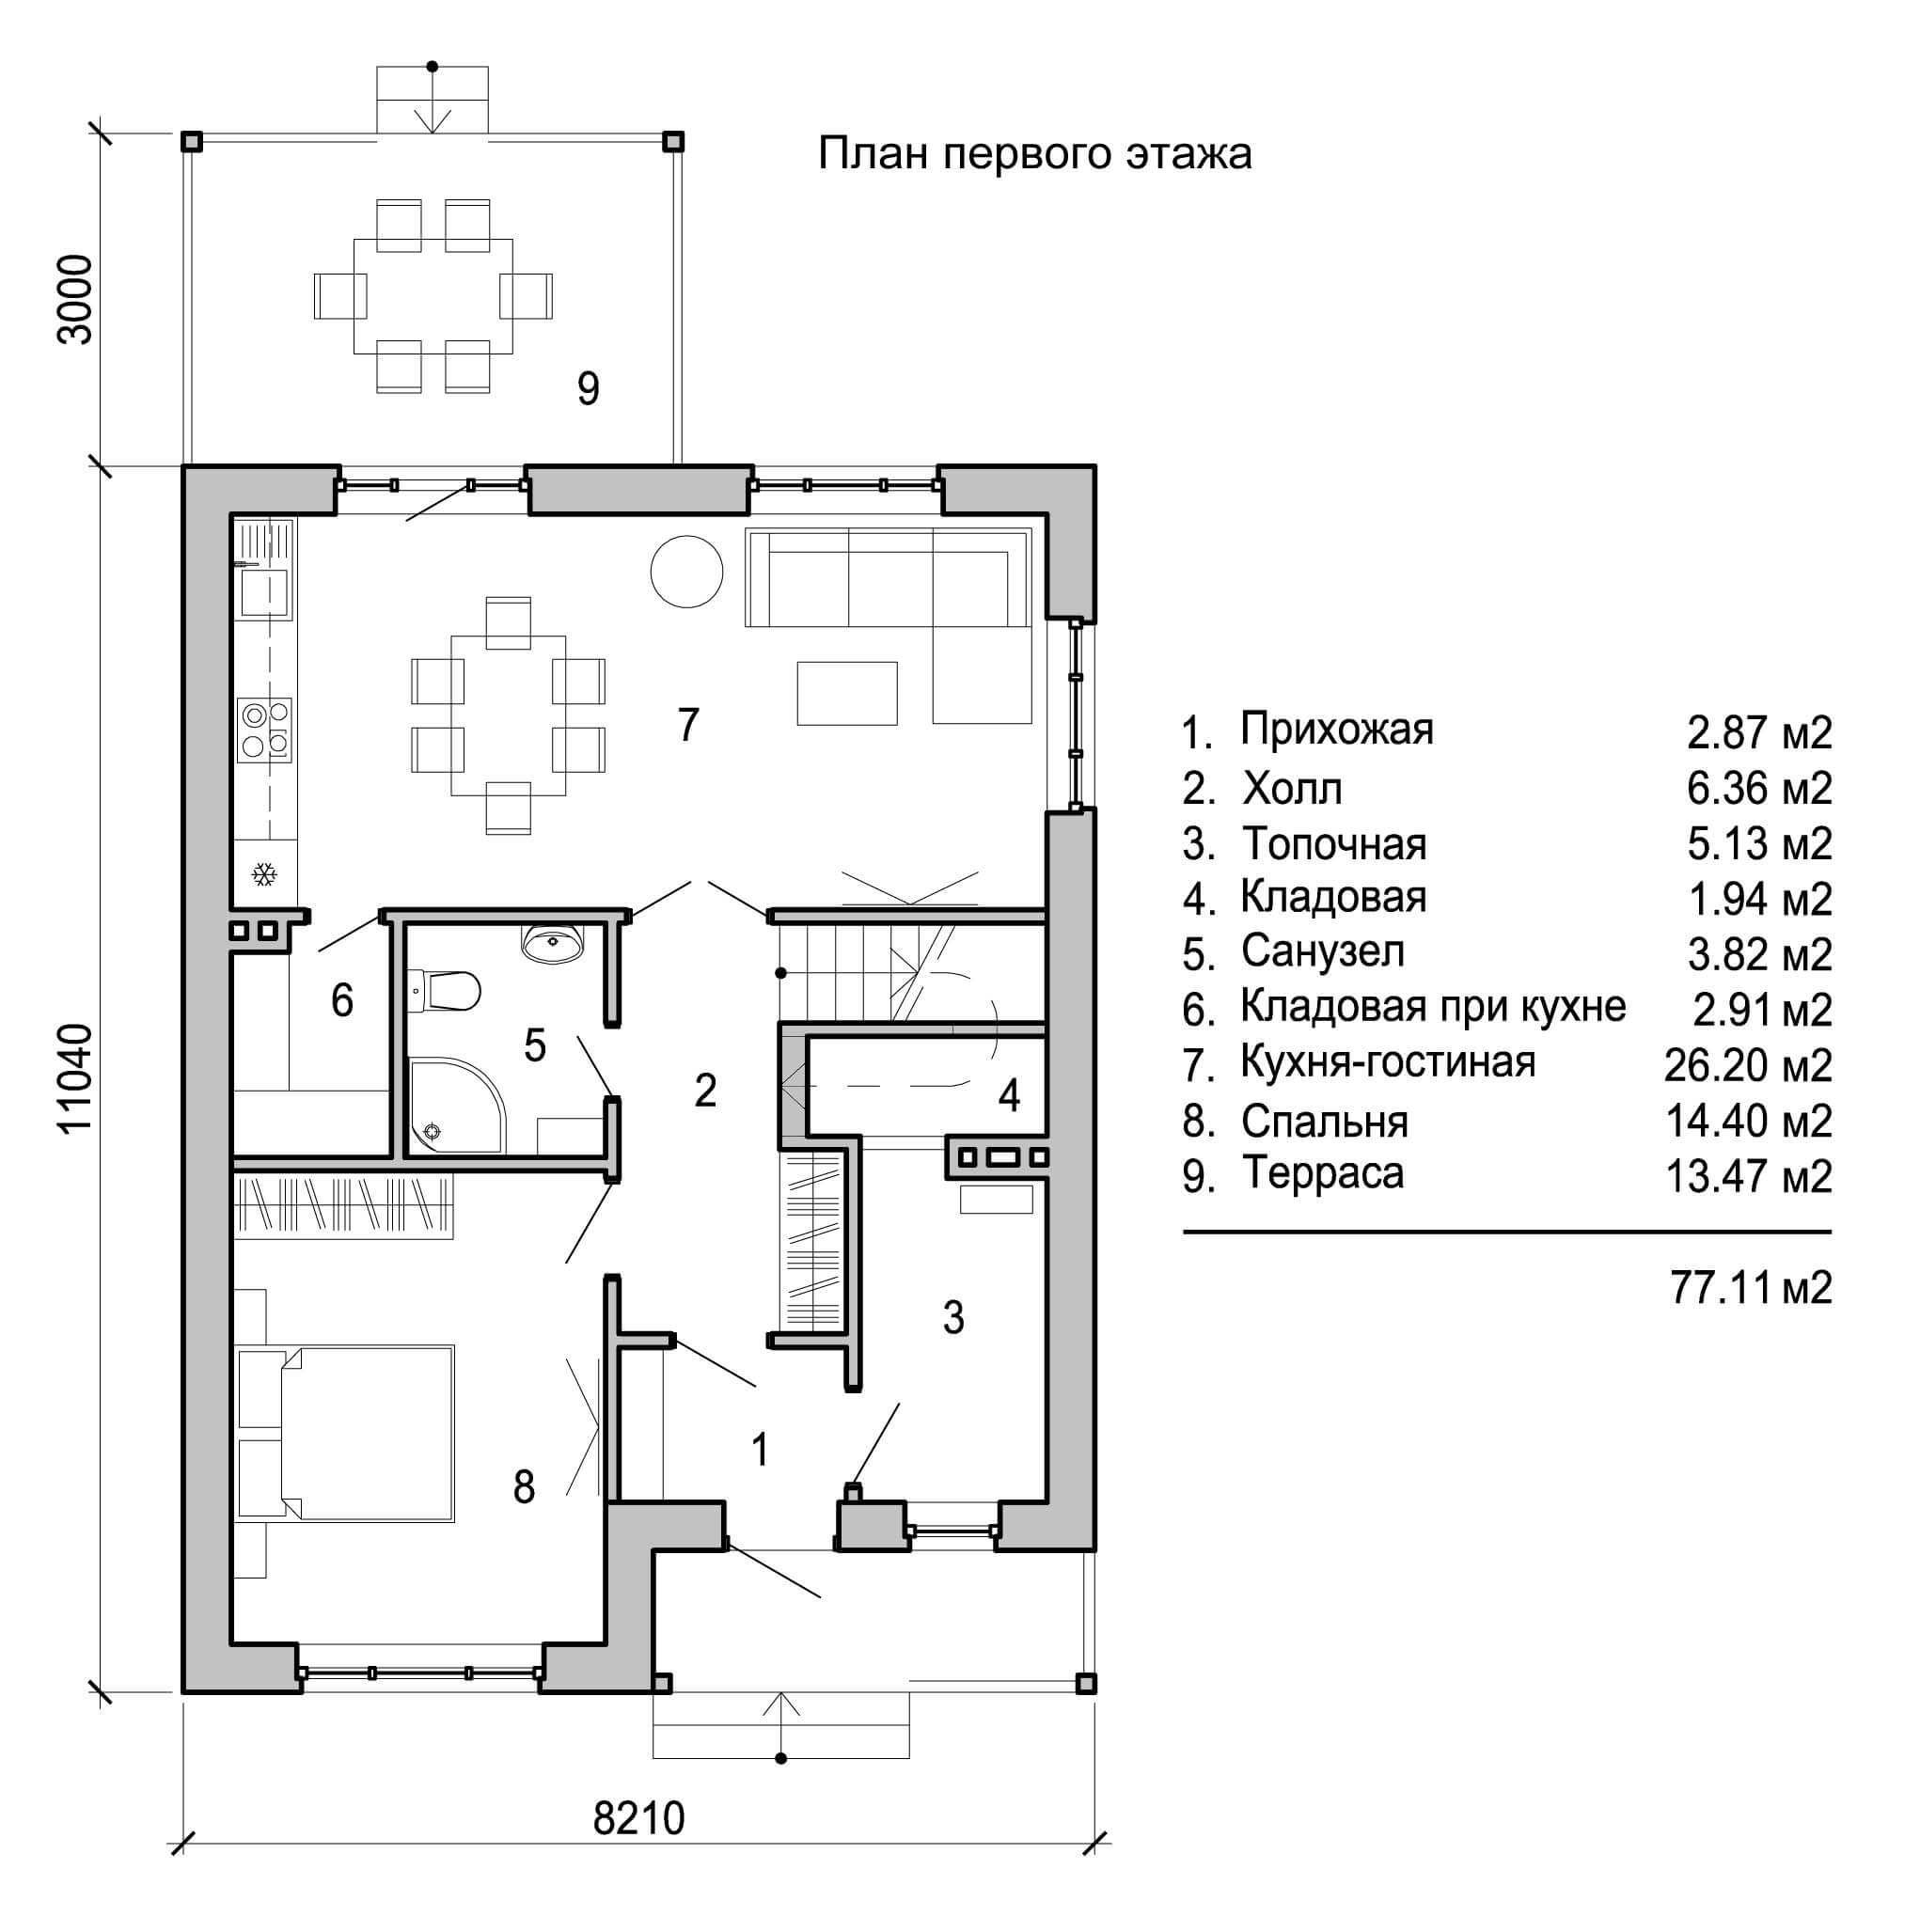 Проект кухни с санузлом. План двухэтажного дома 120кв. Планировка двухэтажного дома 120 кв.м с лестницей сбоку дома. План дома 120 кв.м двухэтажный. План небольшого коттеджа.